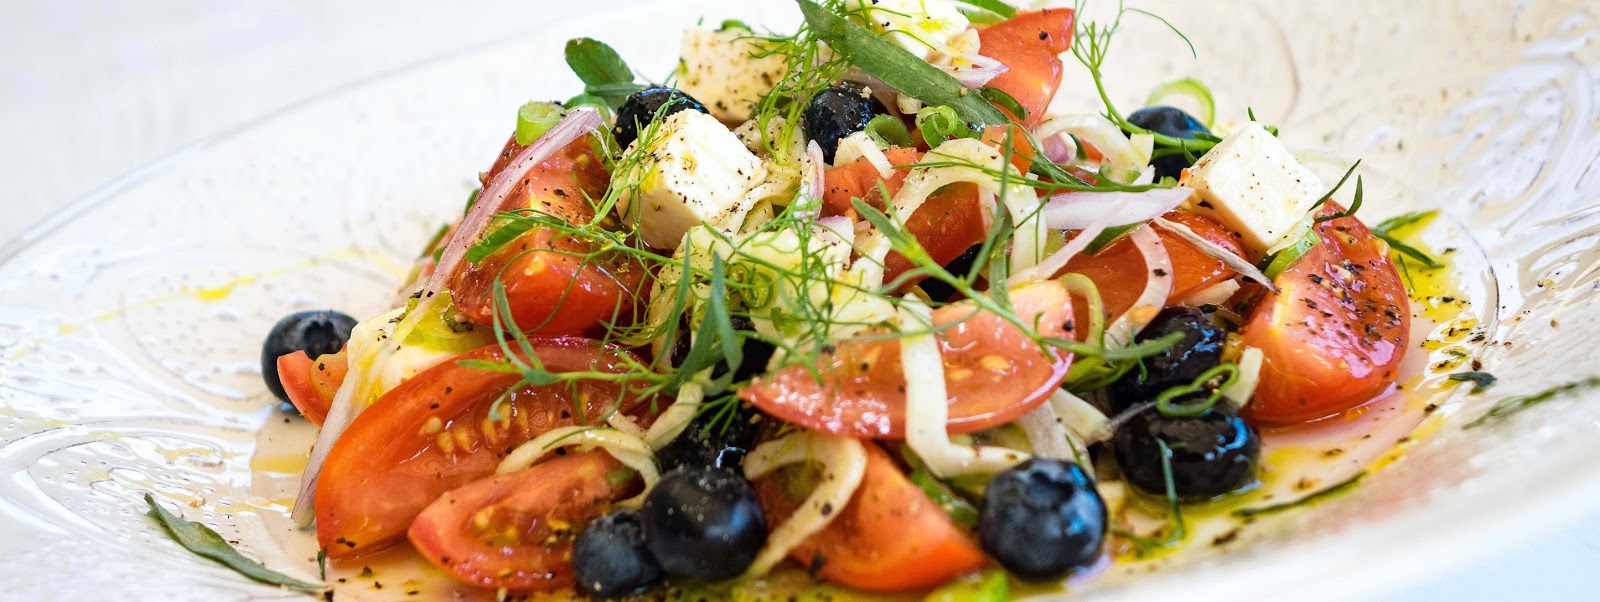 stuttgartcooking: Tomaten-Salat mit Schafskäse, Heidelbeeren, Fenchel ...